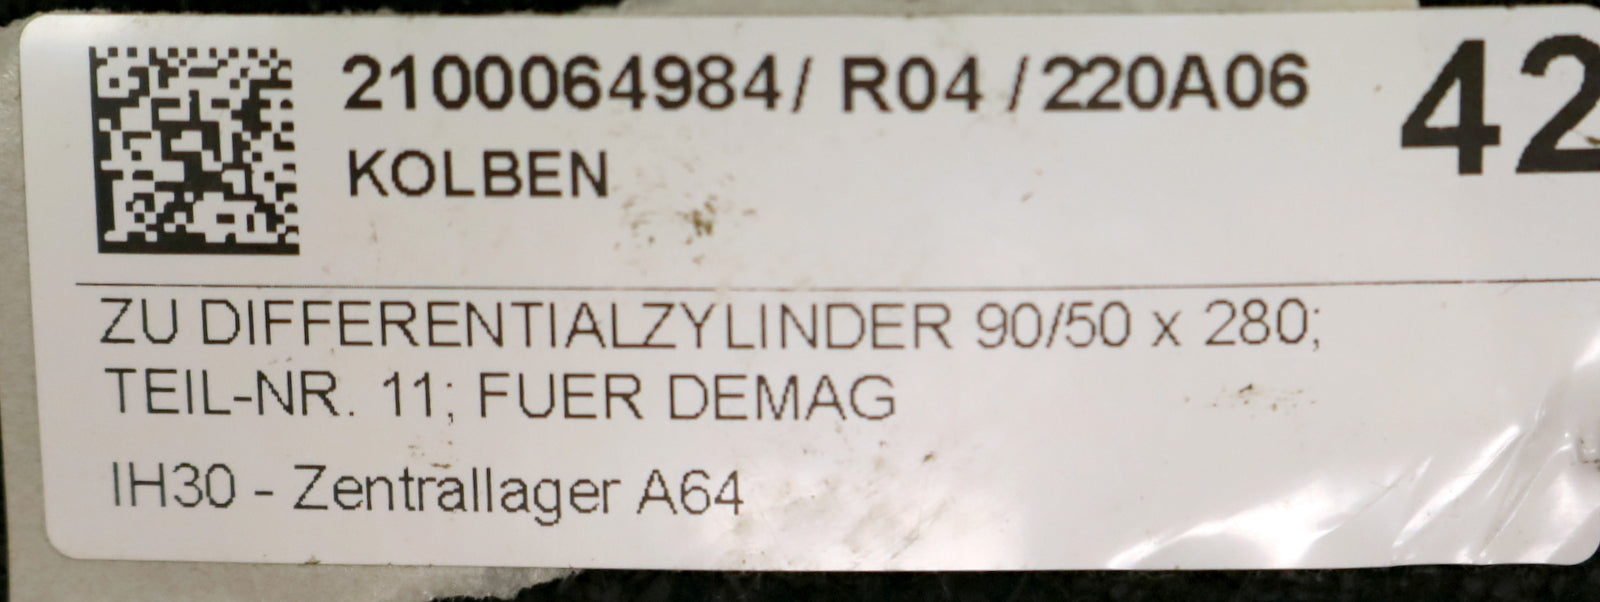 DEMAG Kolben zu Differentialzylinder 90/50x280 Best.Nr. 923 101 44 unbenutzt